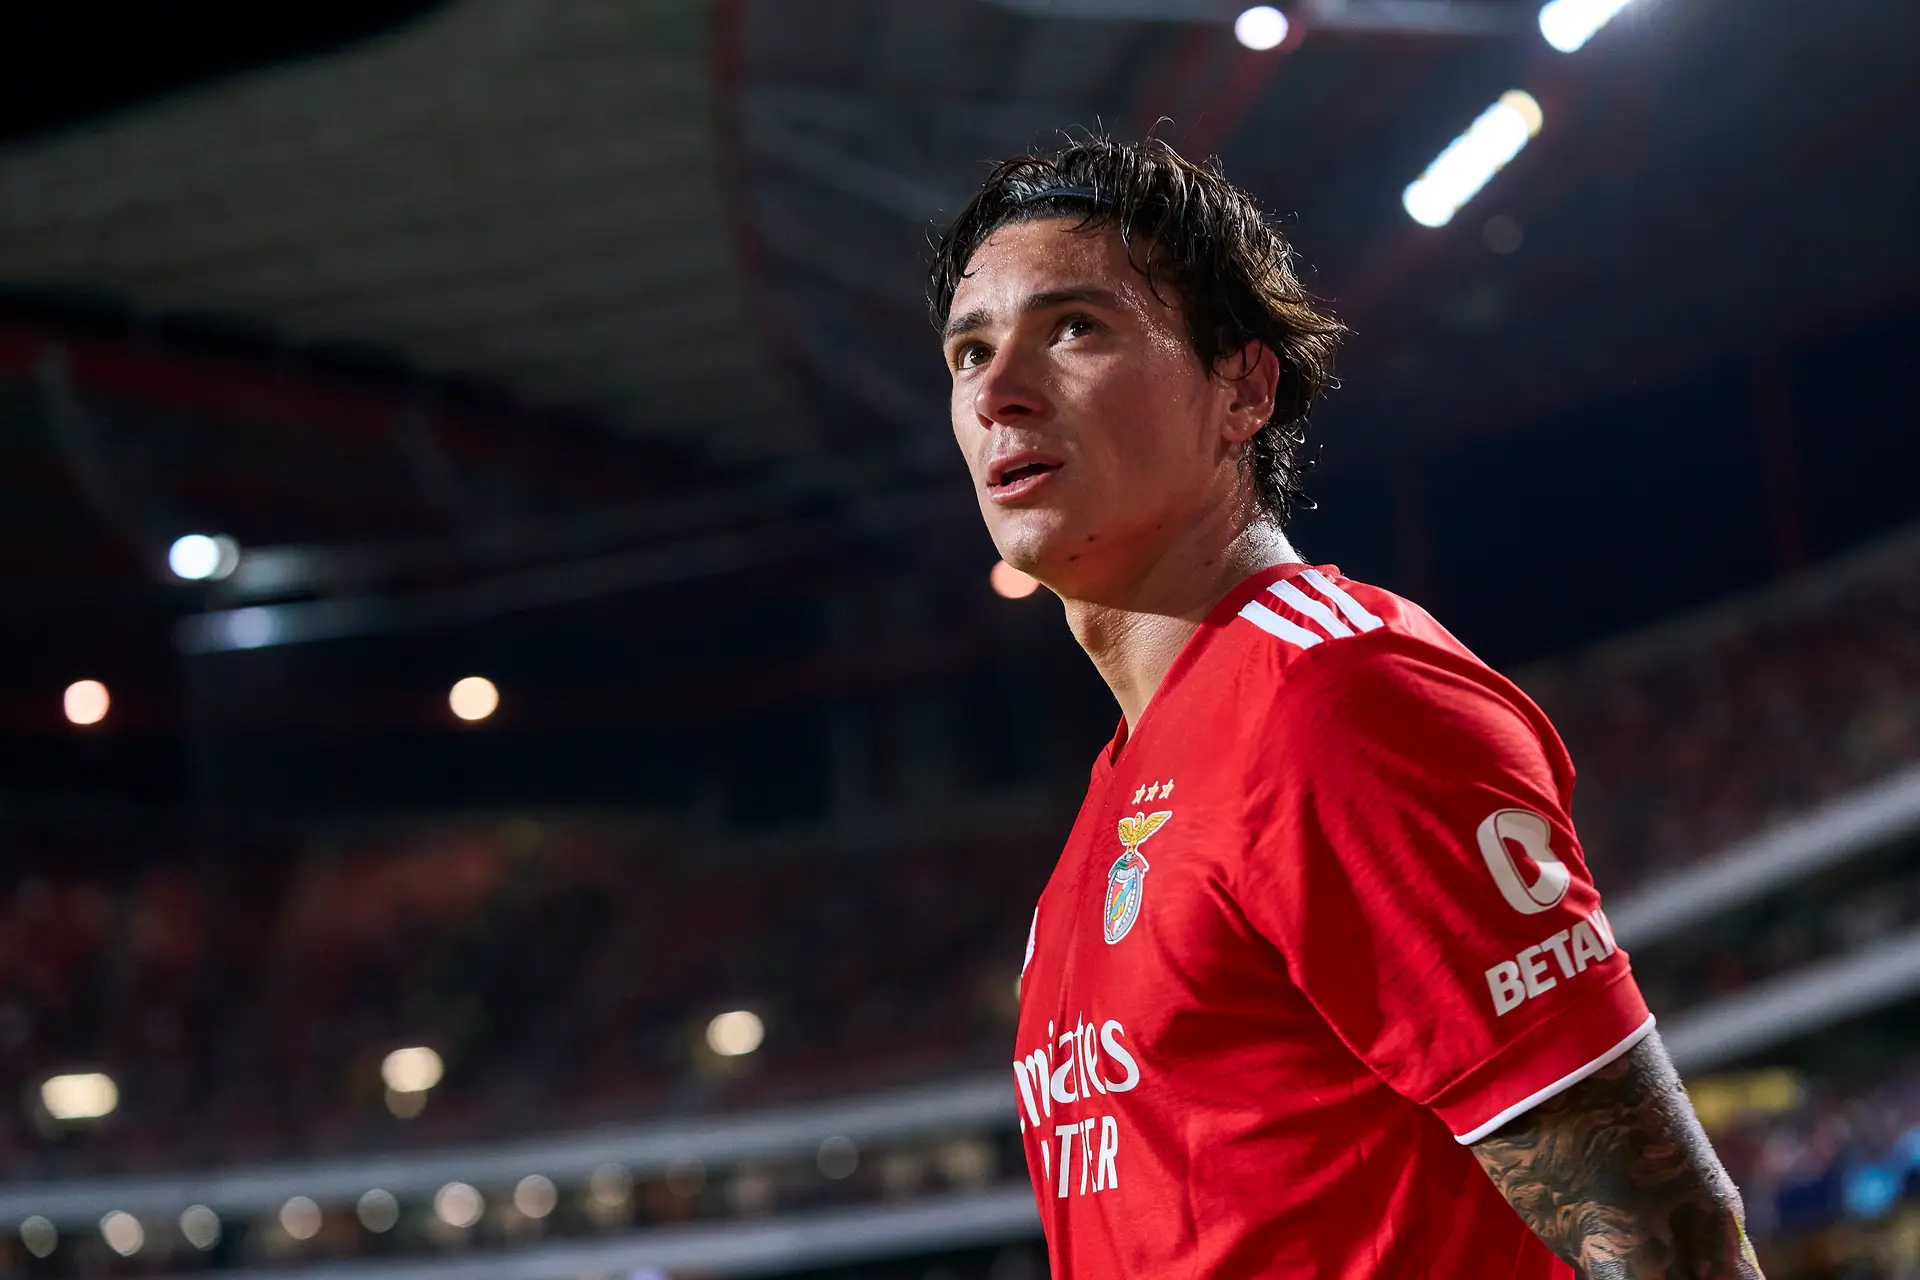 Liverpool interessado em jovem do Benfica que está em final de contrato